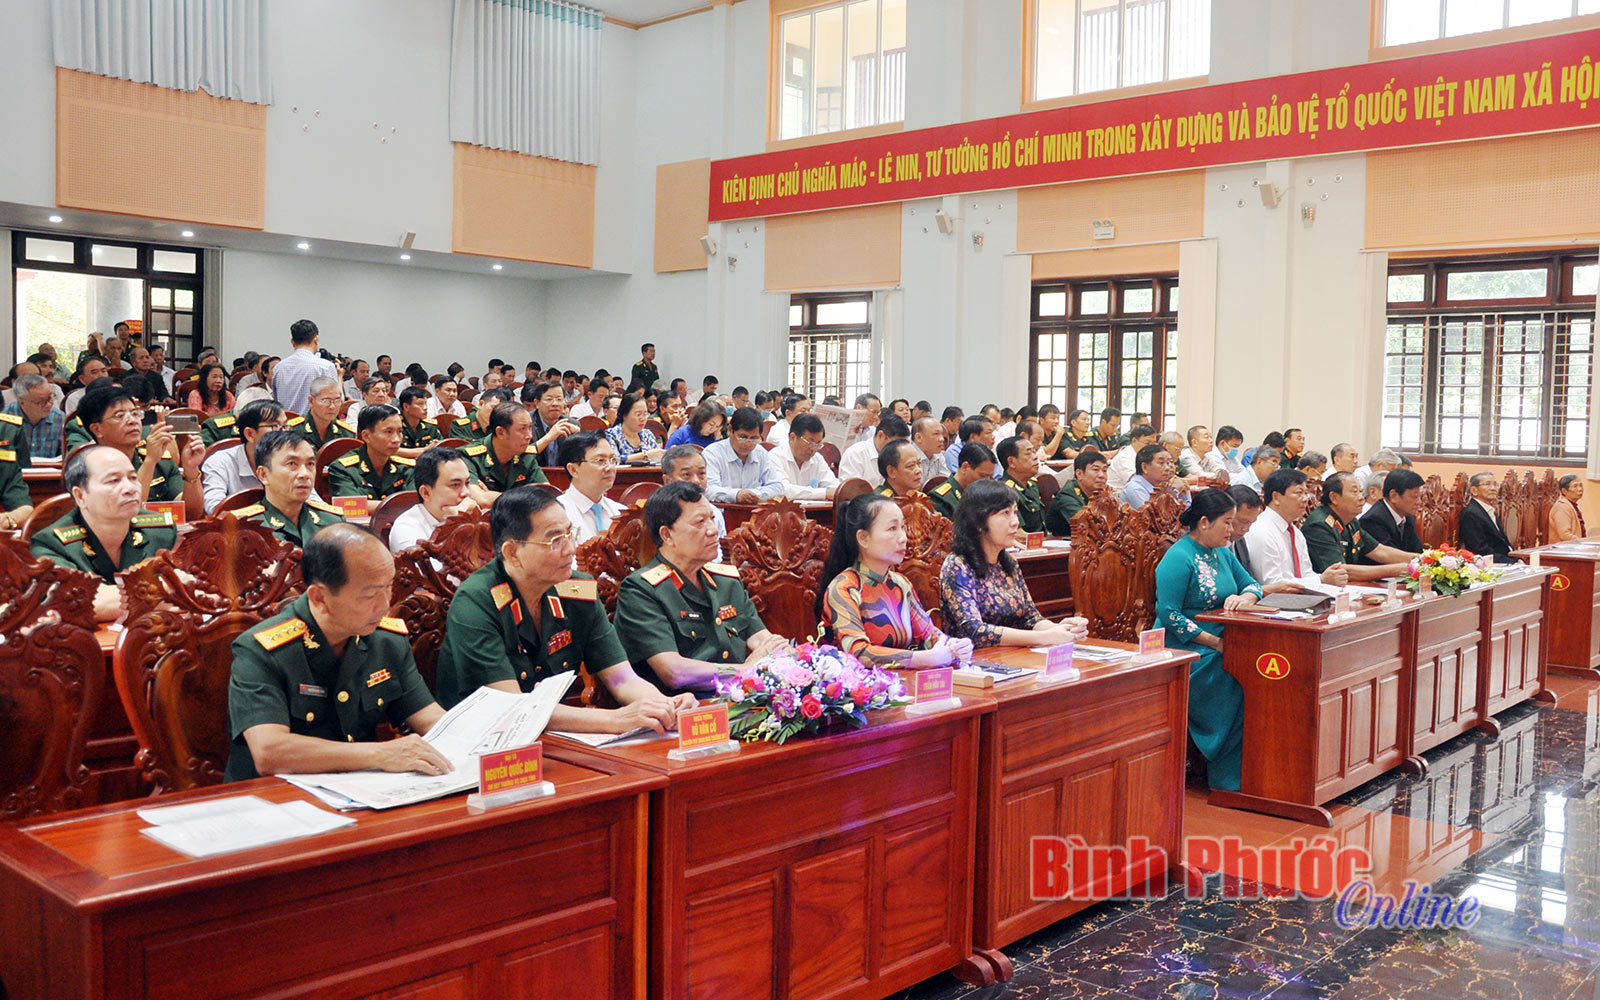 Luôn xứng đáng với niềm tin yêu của Đảng bộ, chính quyền và nhân dân tỉnh Bình Phước